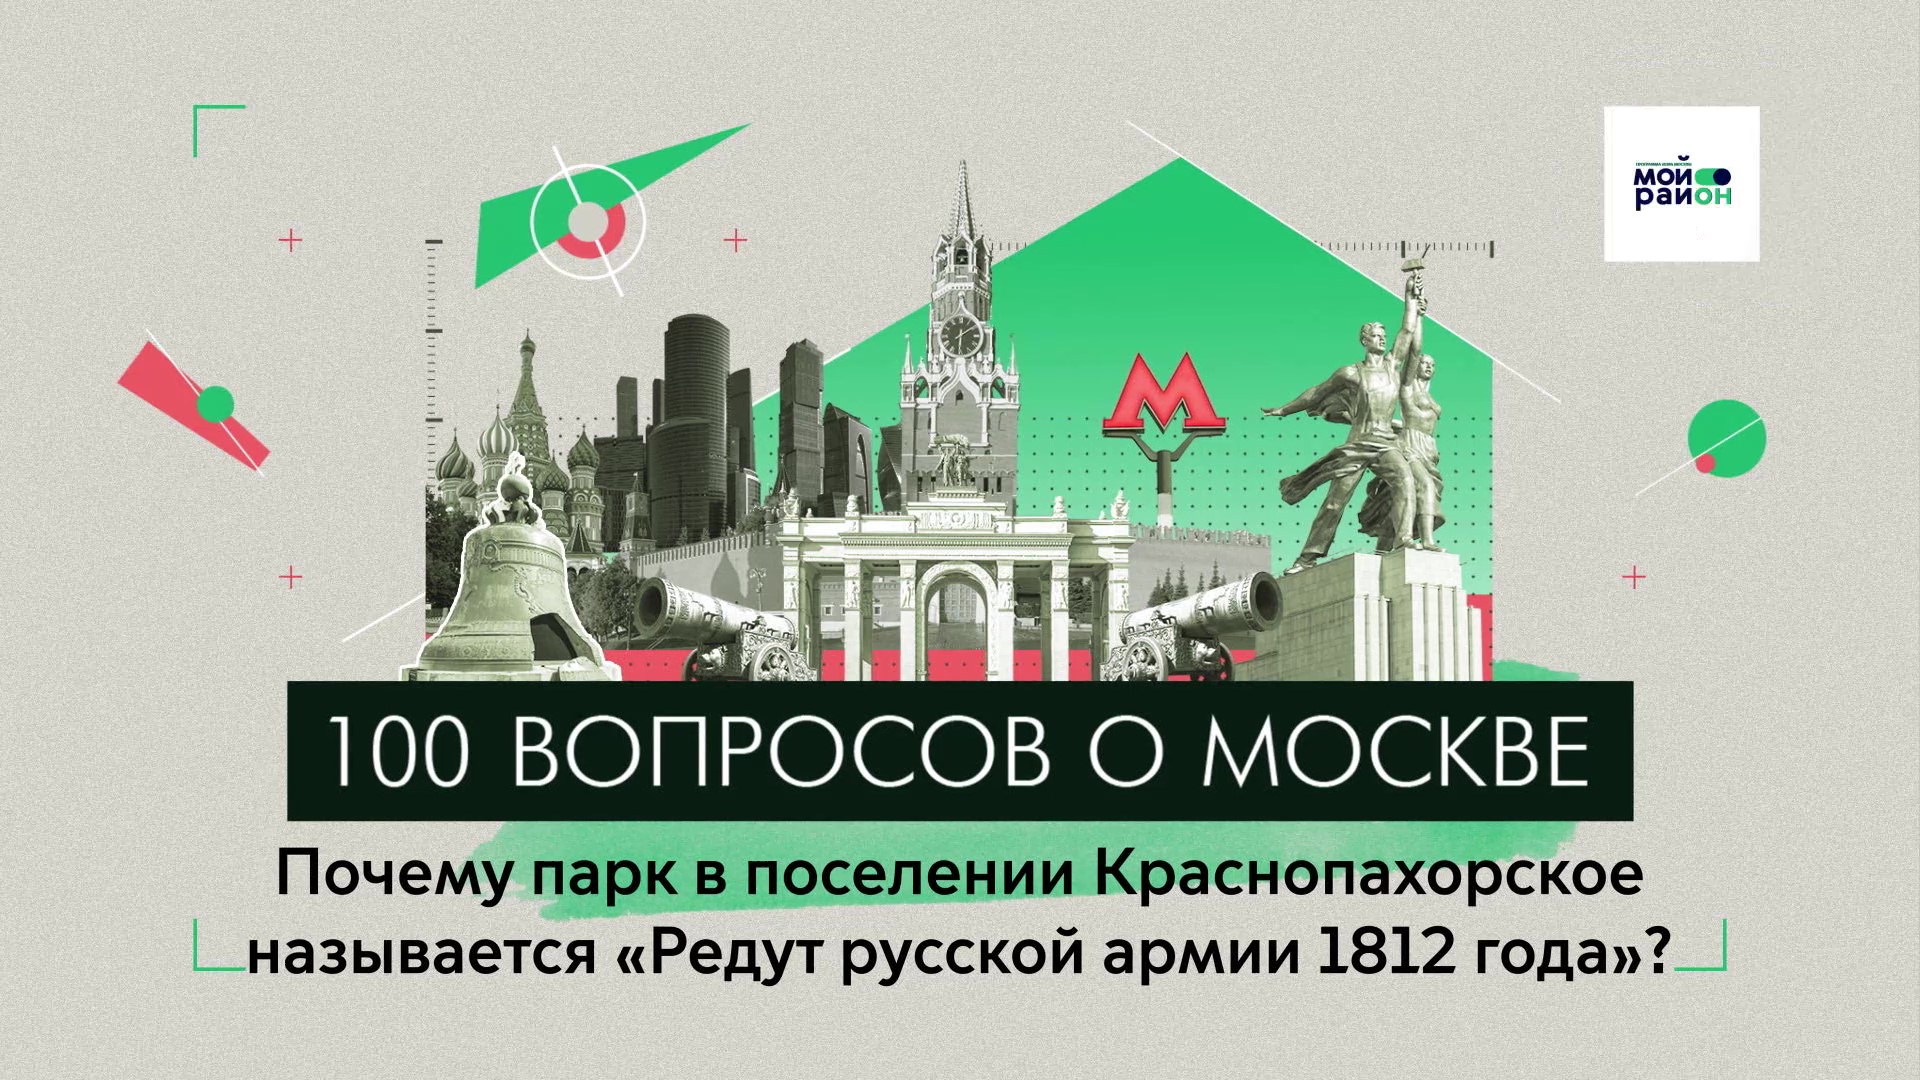 100 вопросов о Москве: Почему парк в Краснопахорском называется «Редут русской армии 1812 года»?